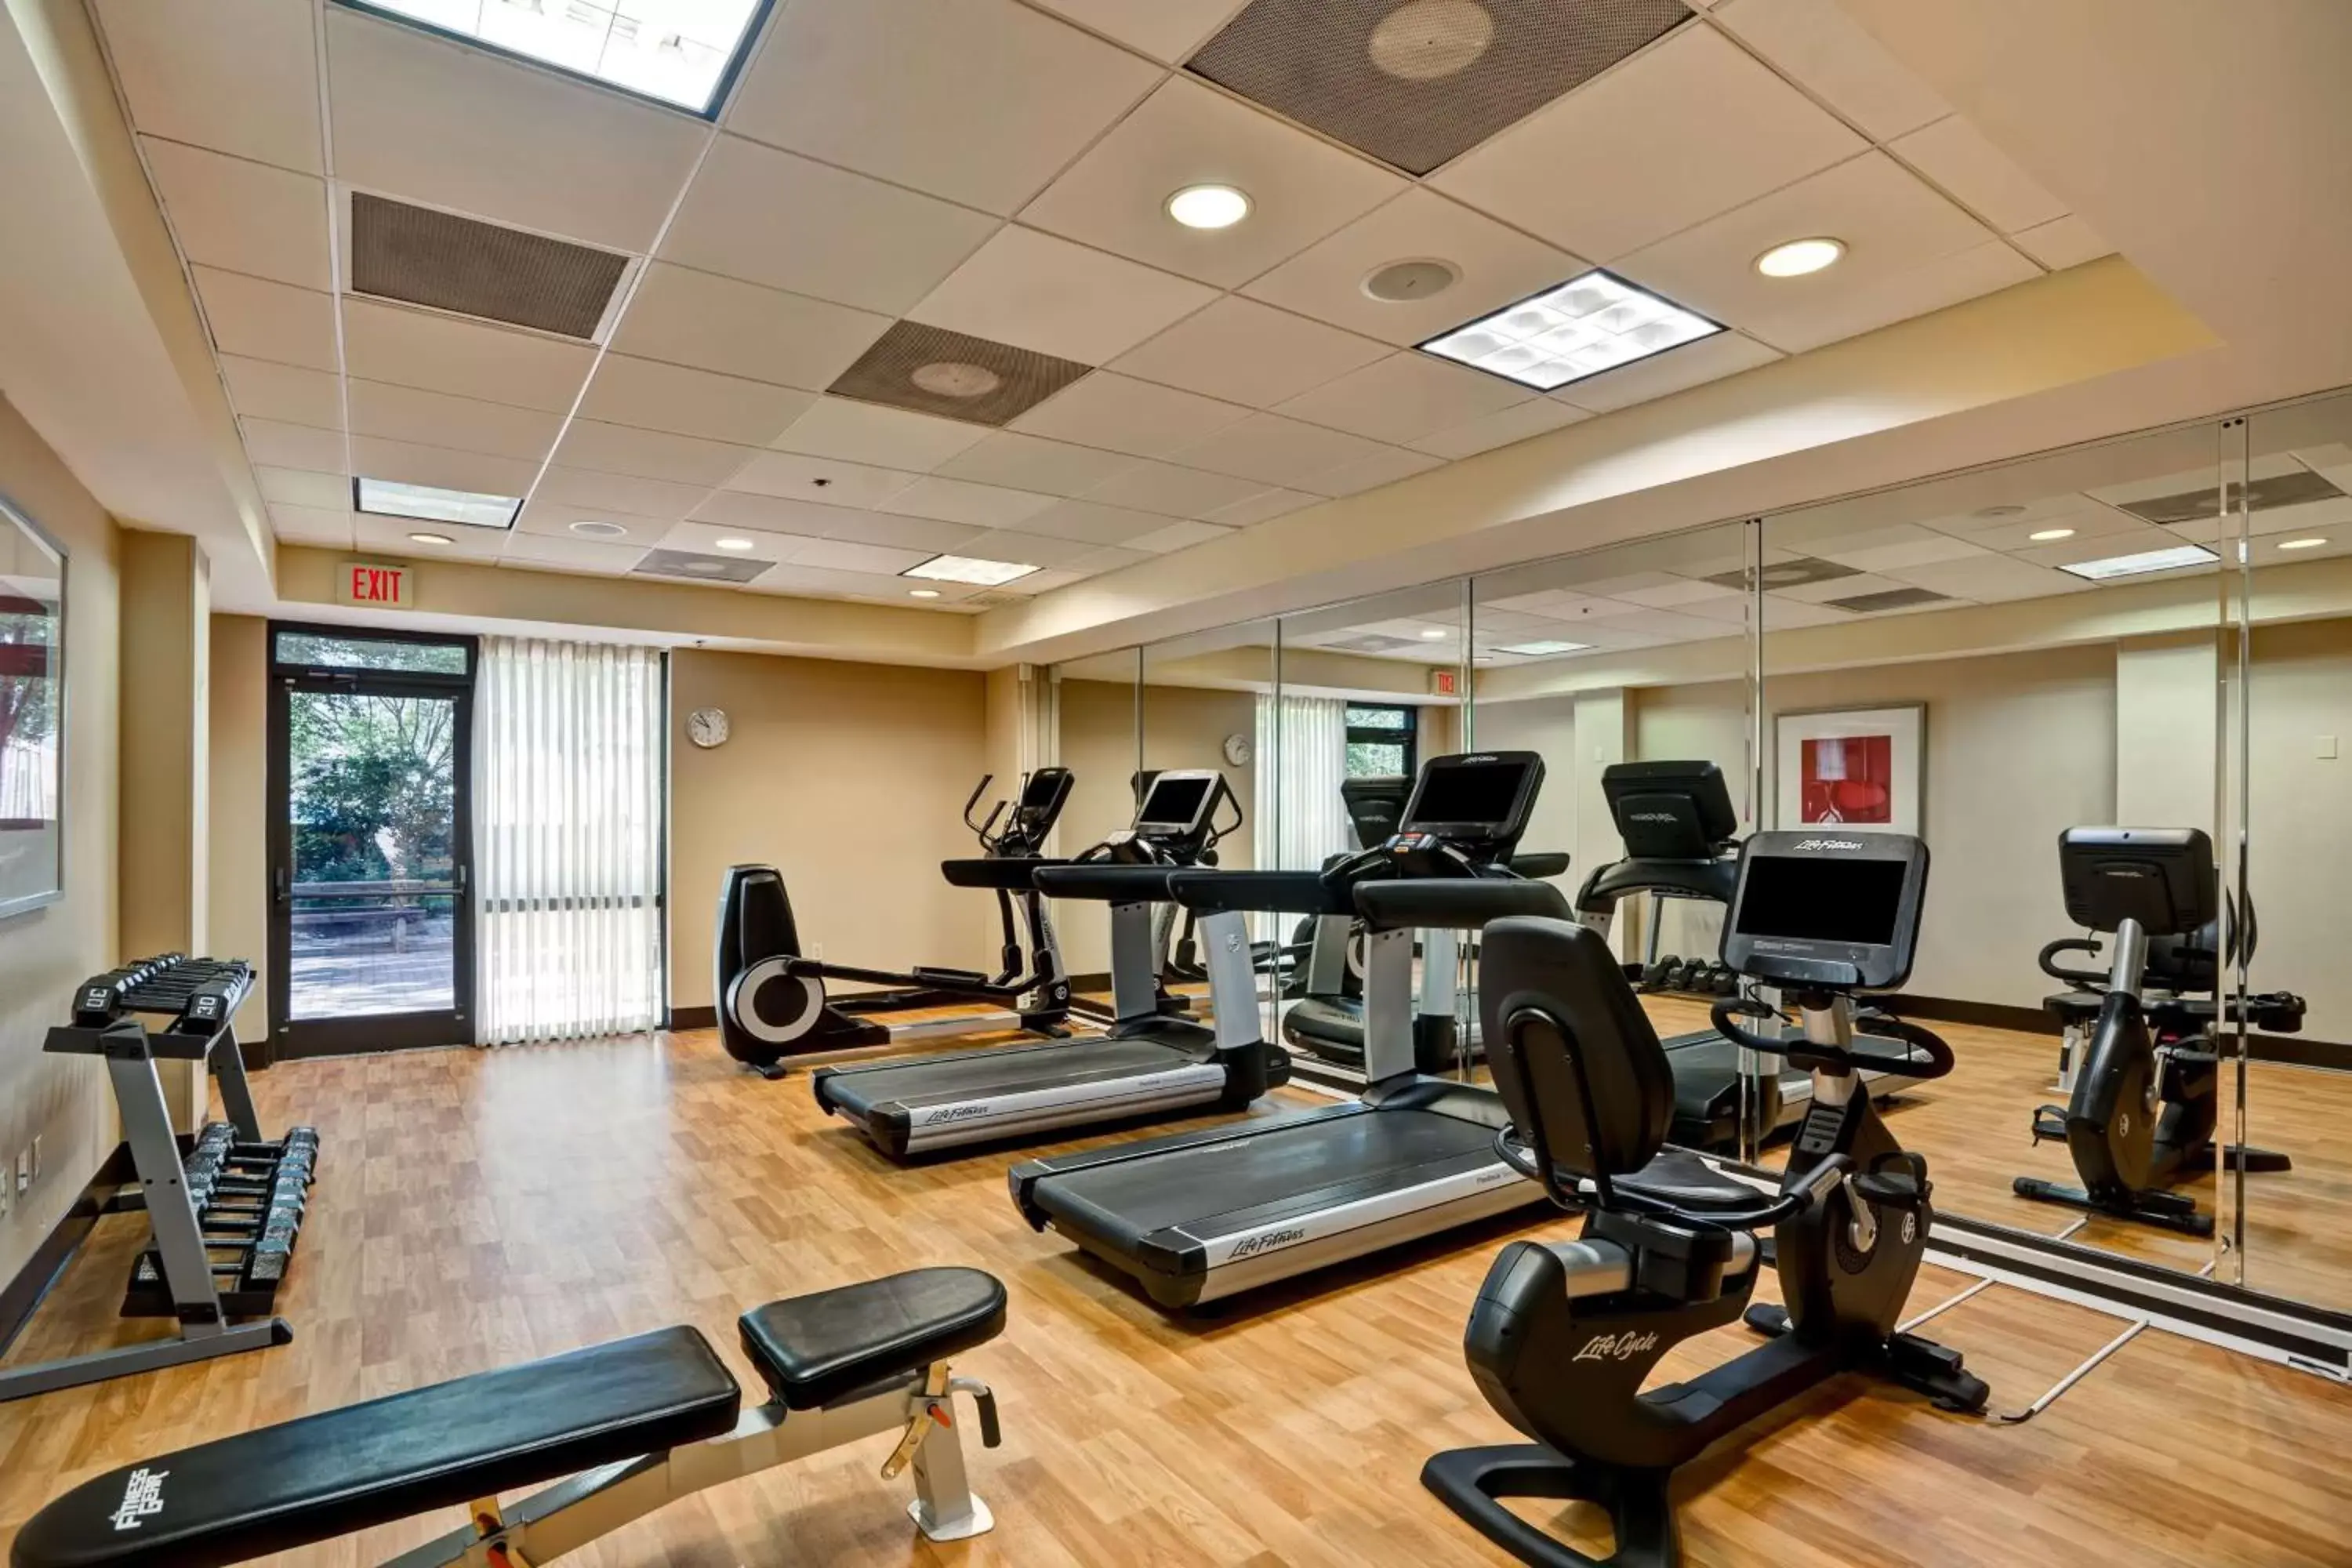 Fitness centre/facilities, Fitness Center/Facilities in Hyatt Place Richmond - Innsbrook